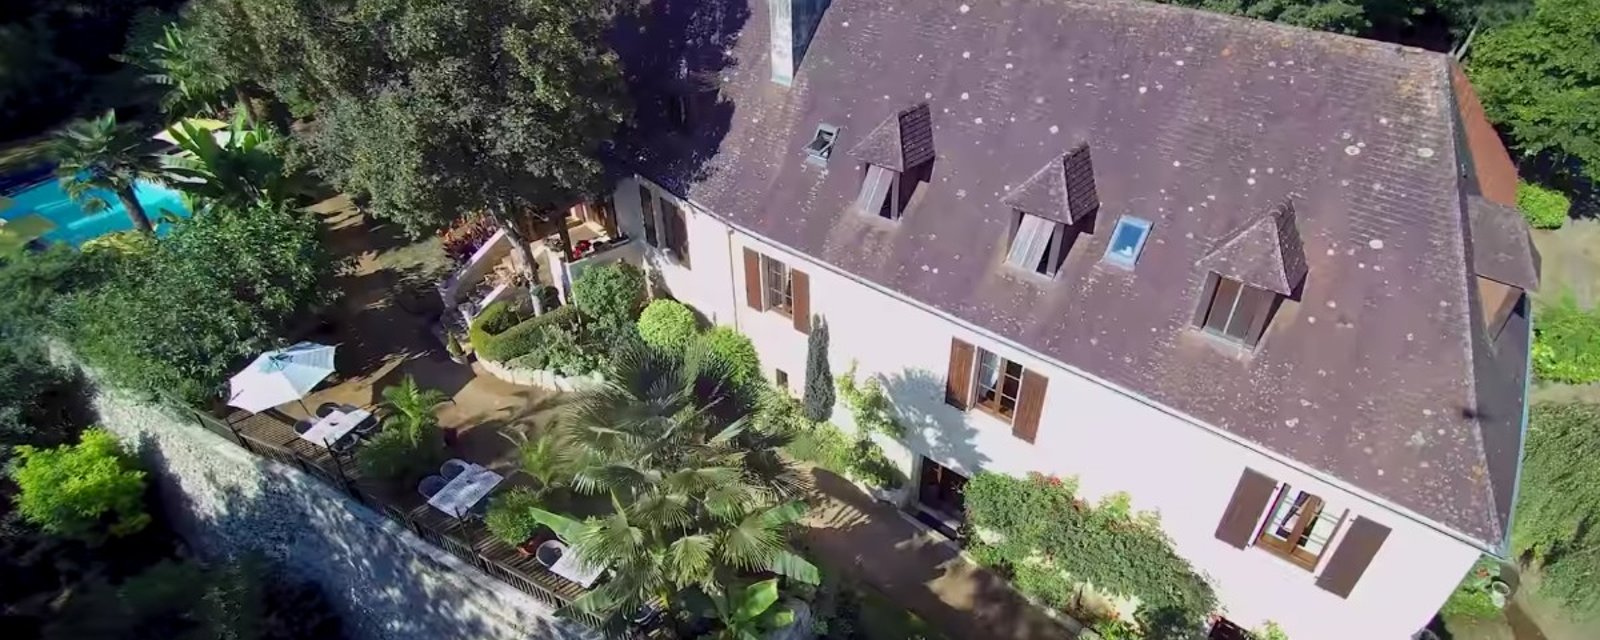 Un couple vend sa maison de 2 millions d'euros pour seulement 13 euros, or il y a un petit mais..